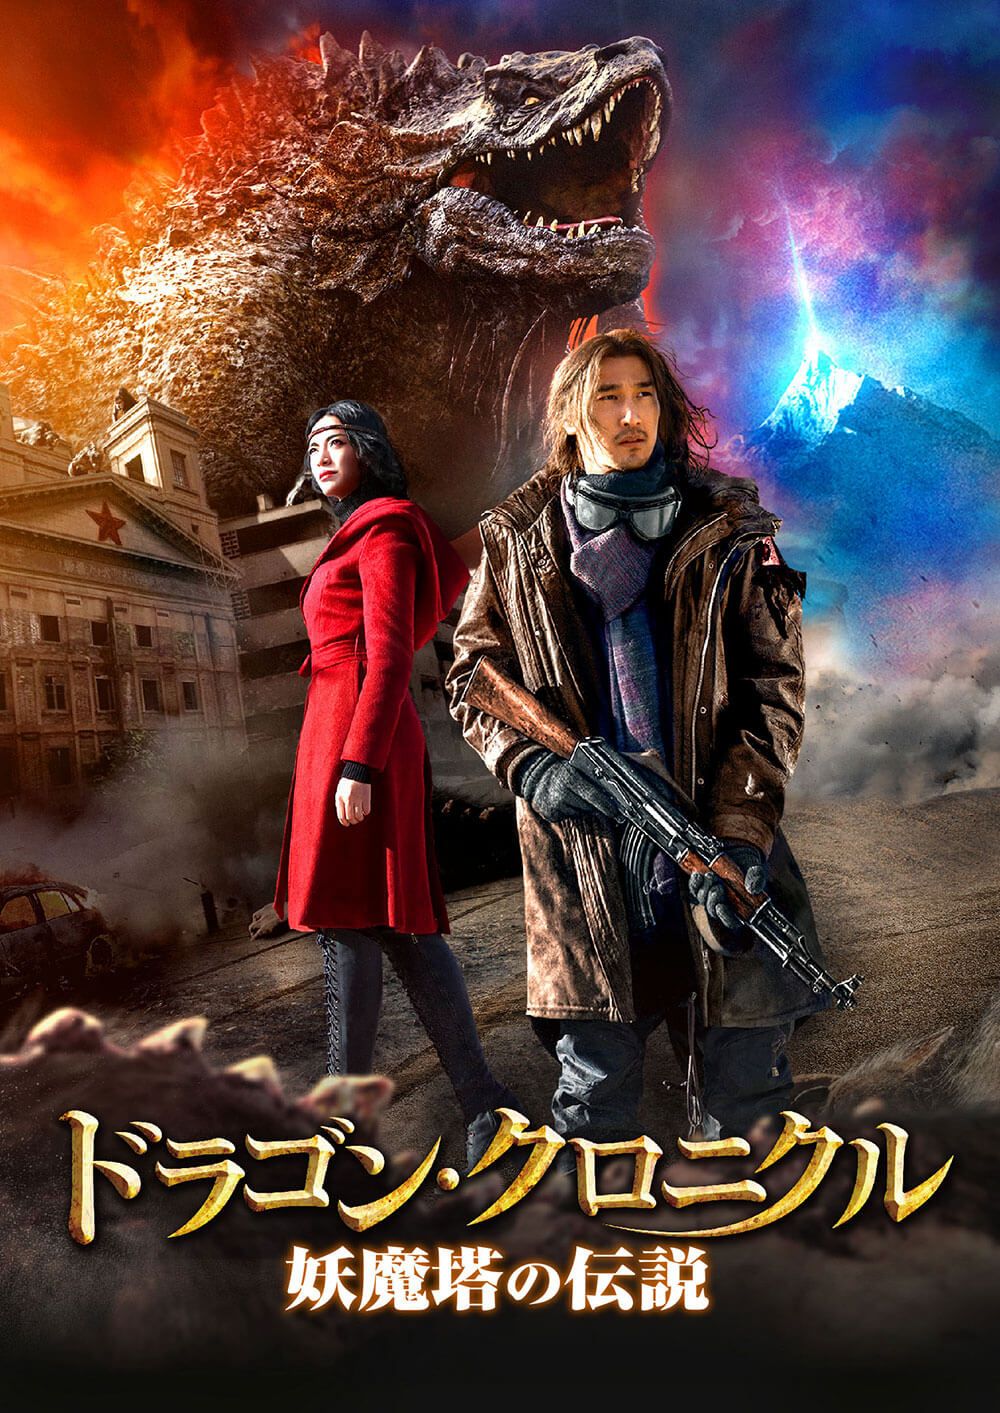 ドラゴン・クロニクル 妖魔塔の伝説 [Blu-ray] dwos6rj